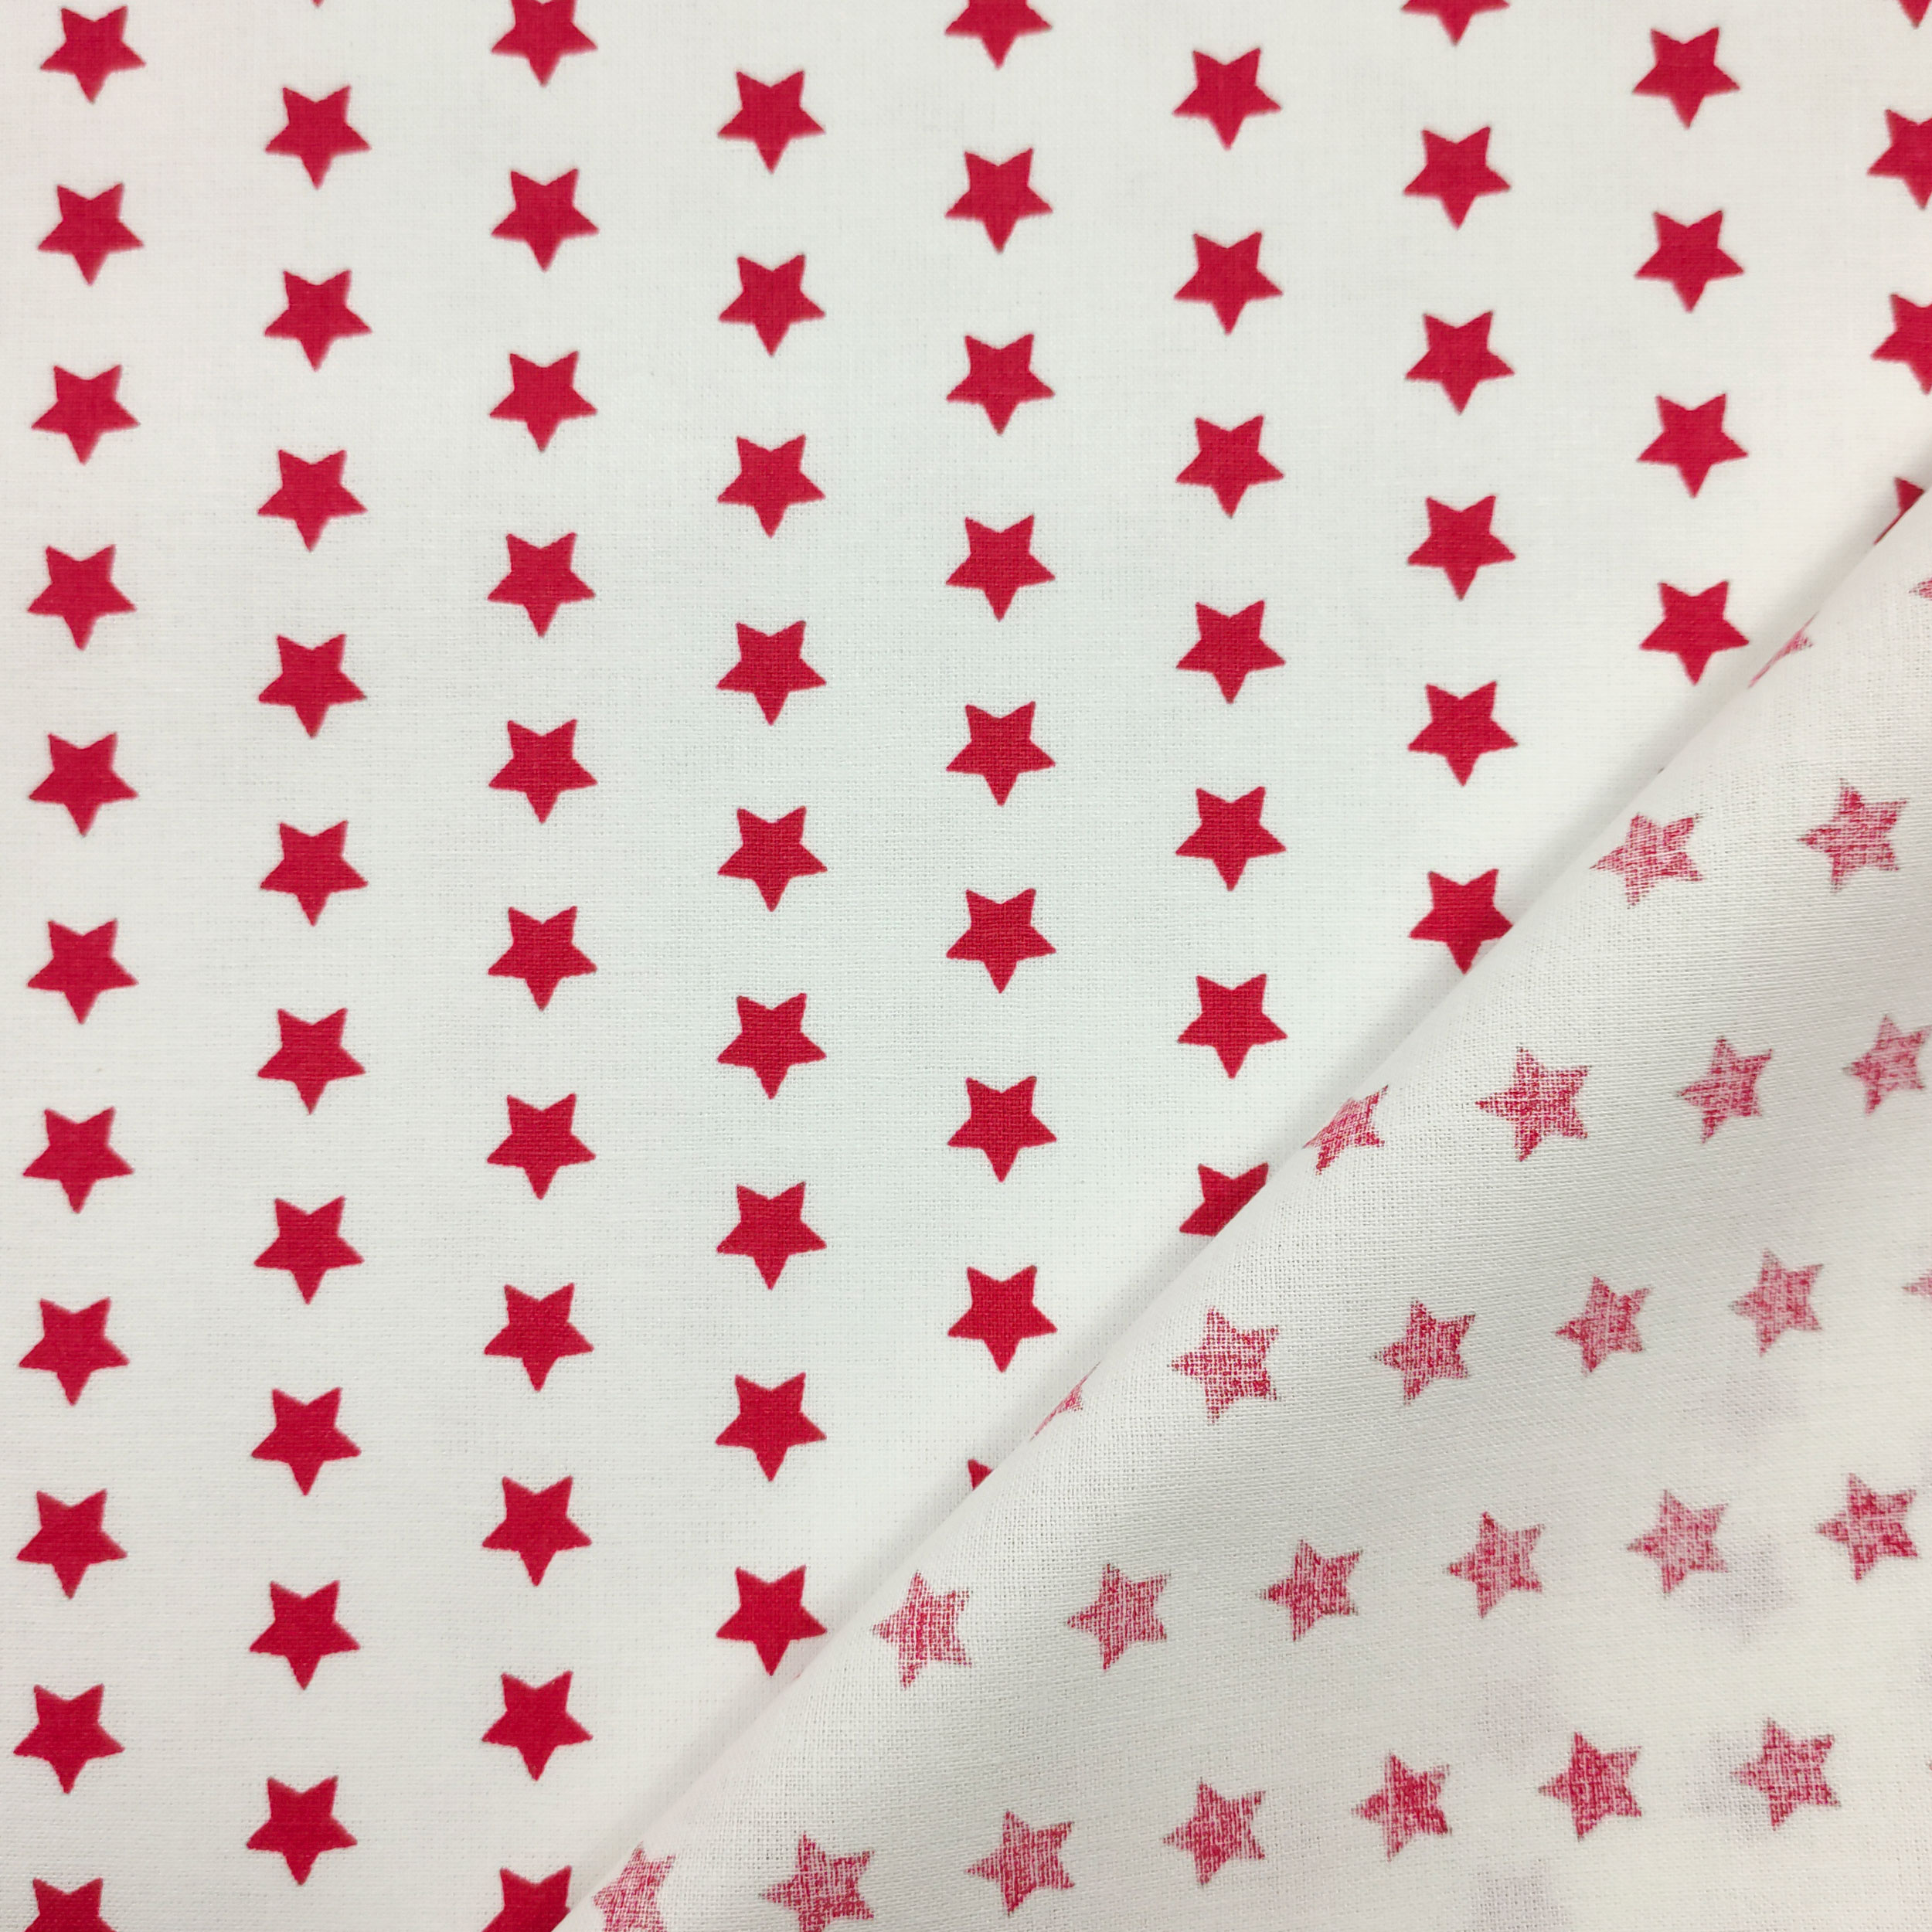 stoffa in cotone con stelle rosse sfondo bianco